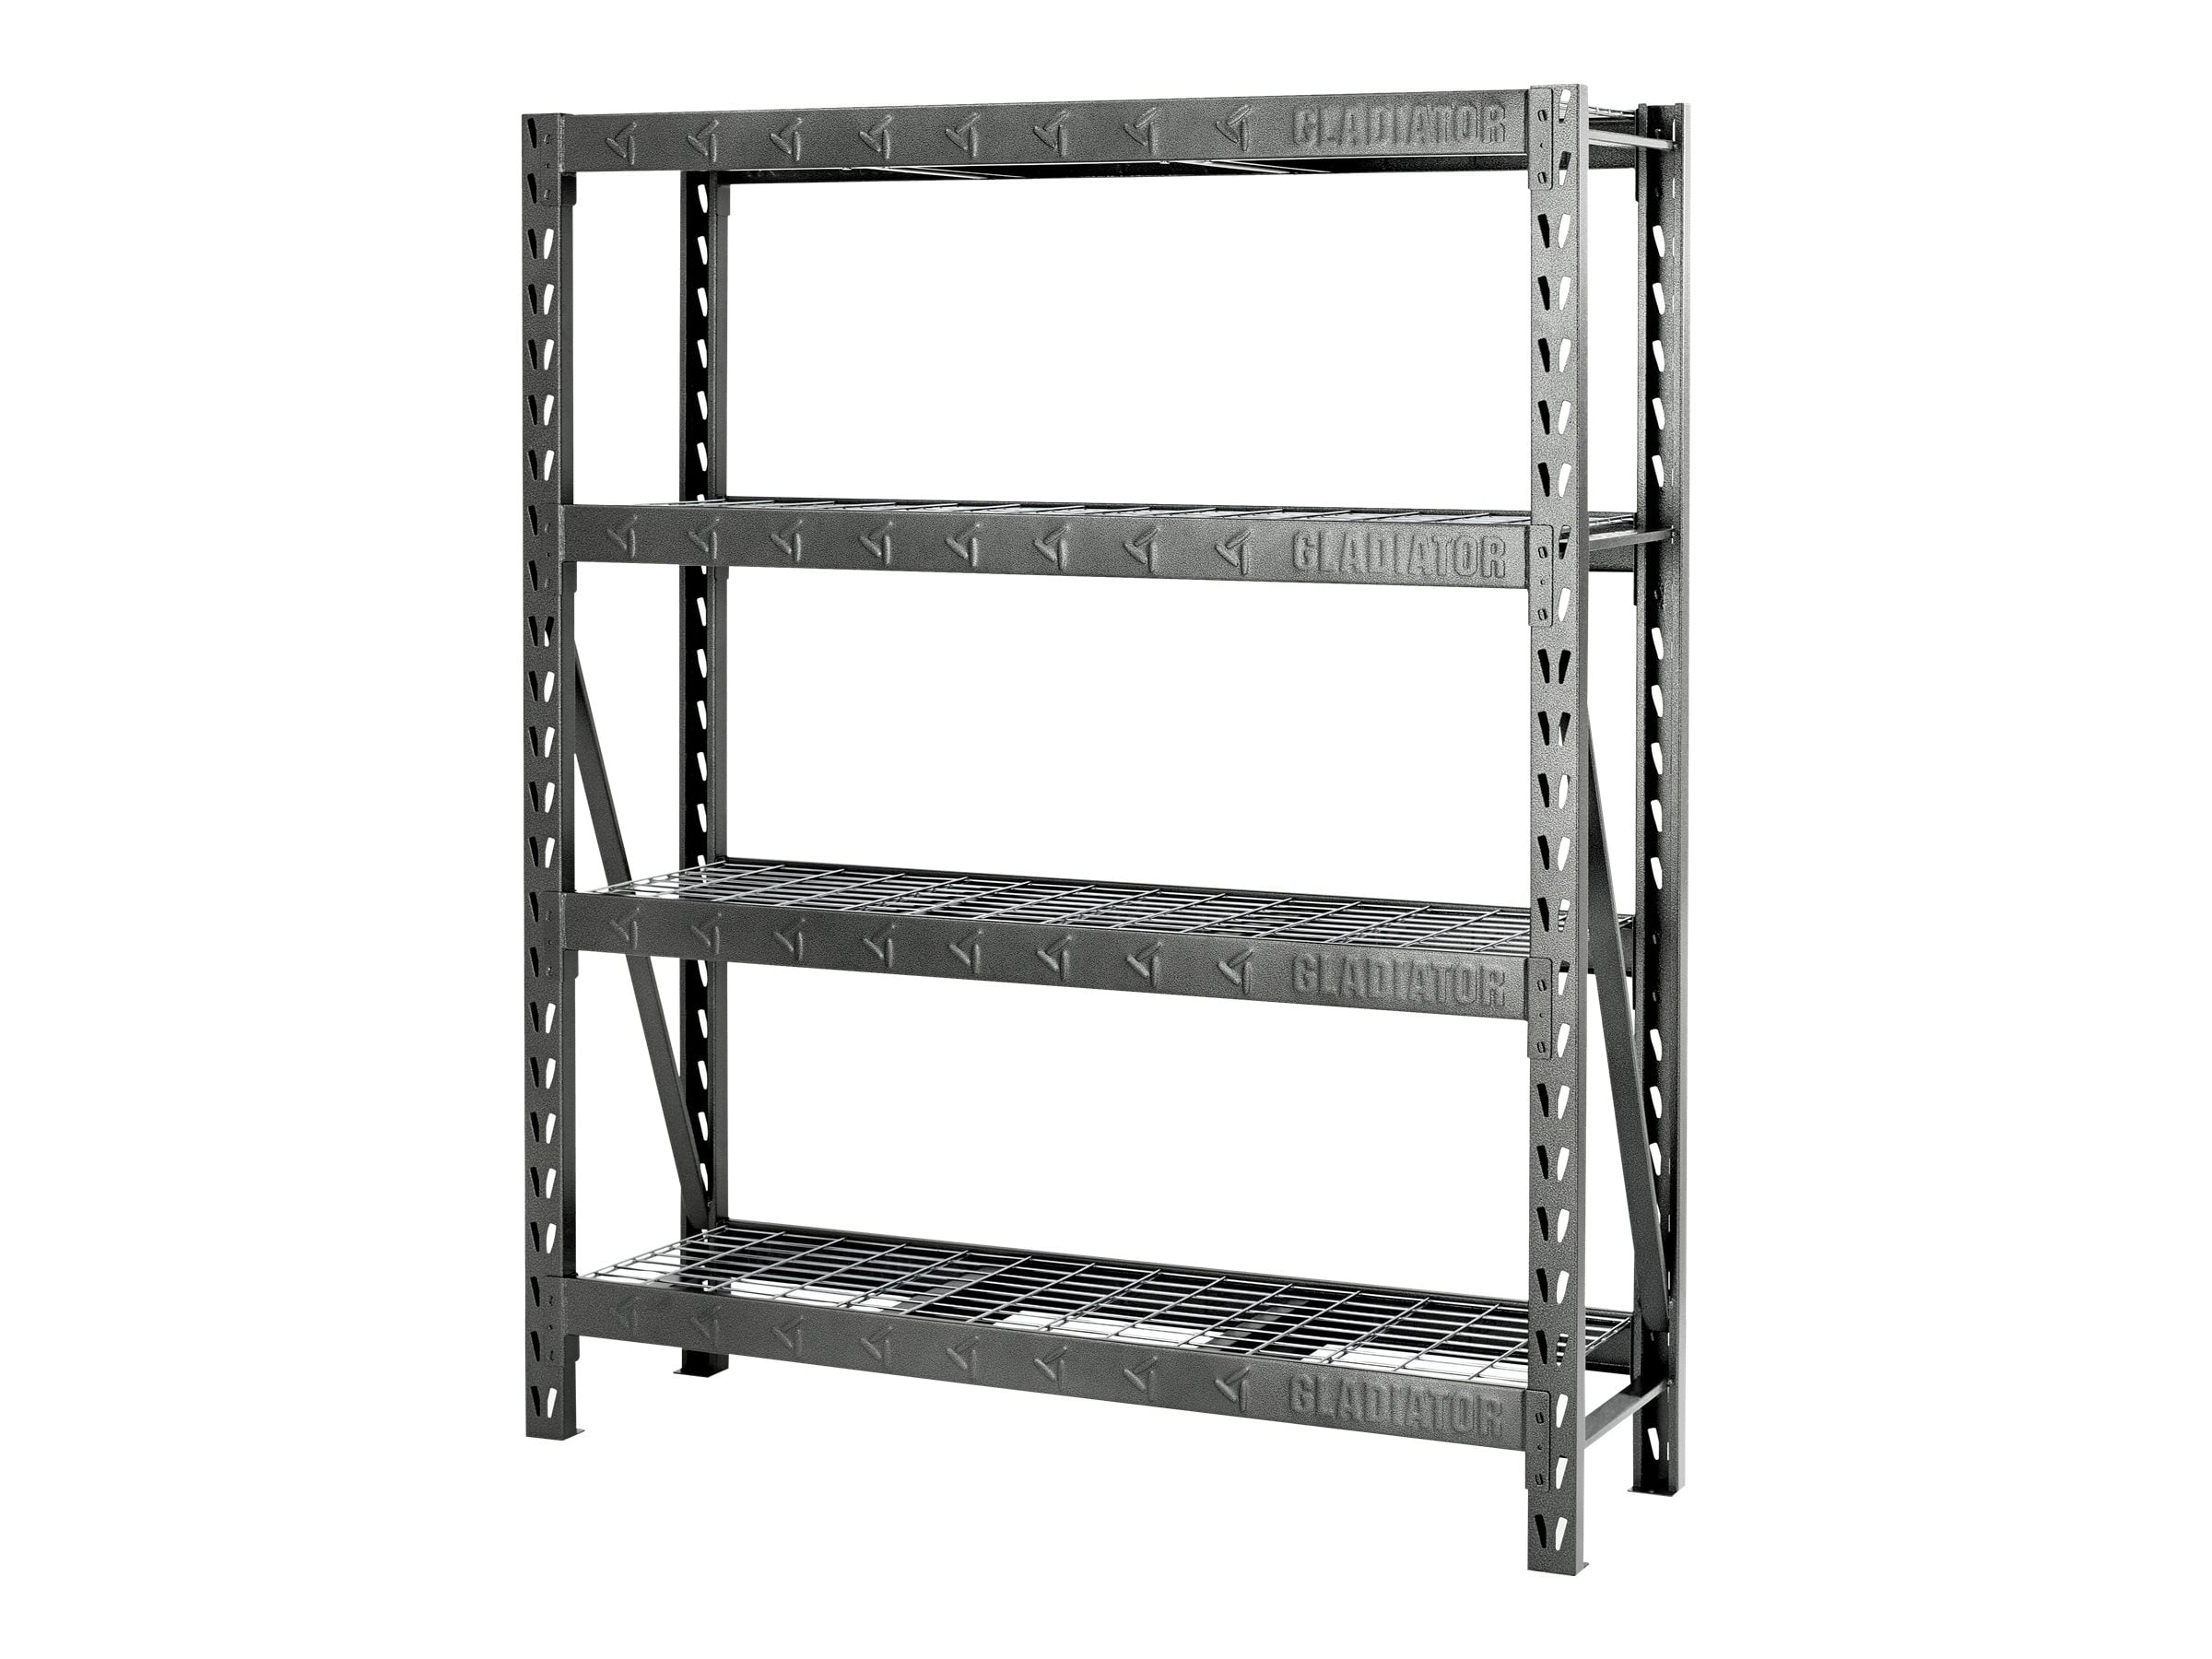 Gladiator Shelf Rack 4 Shelves, Gladiator Steel Shelving